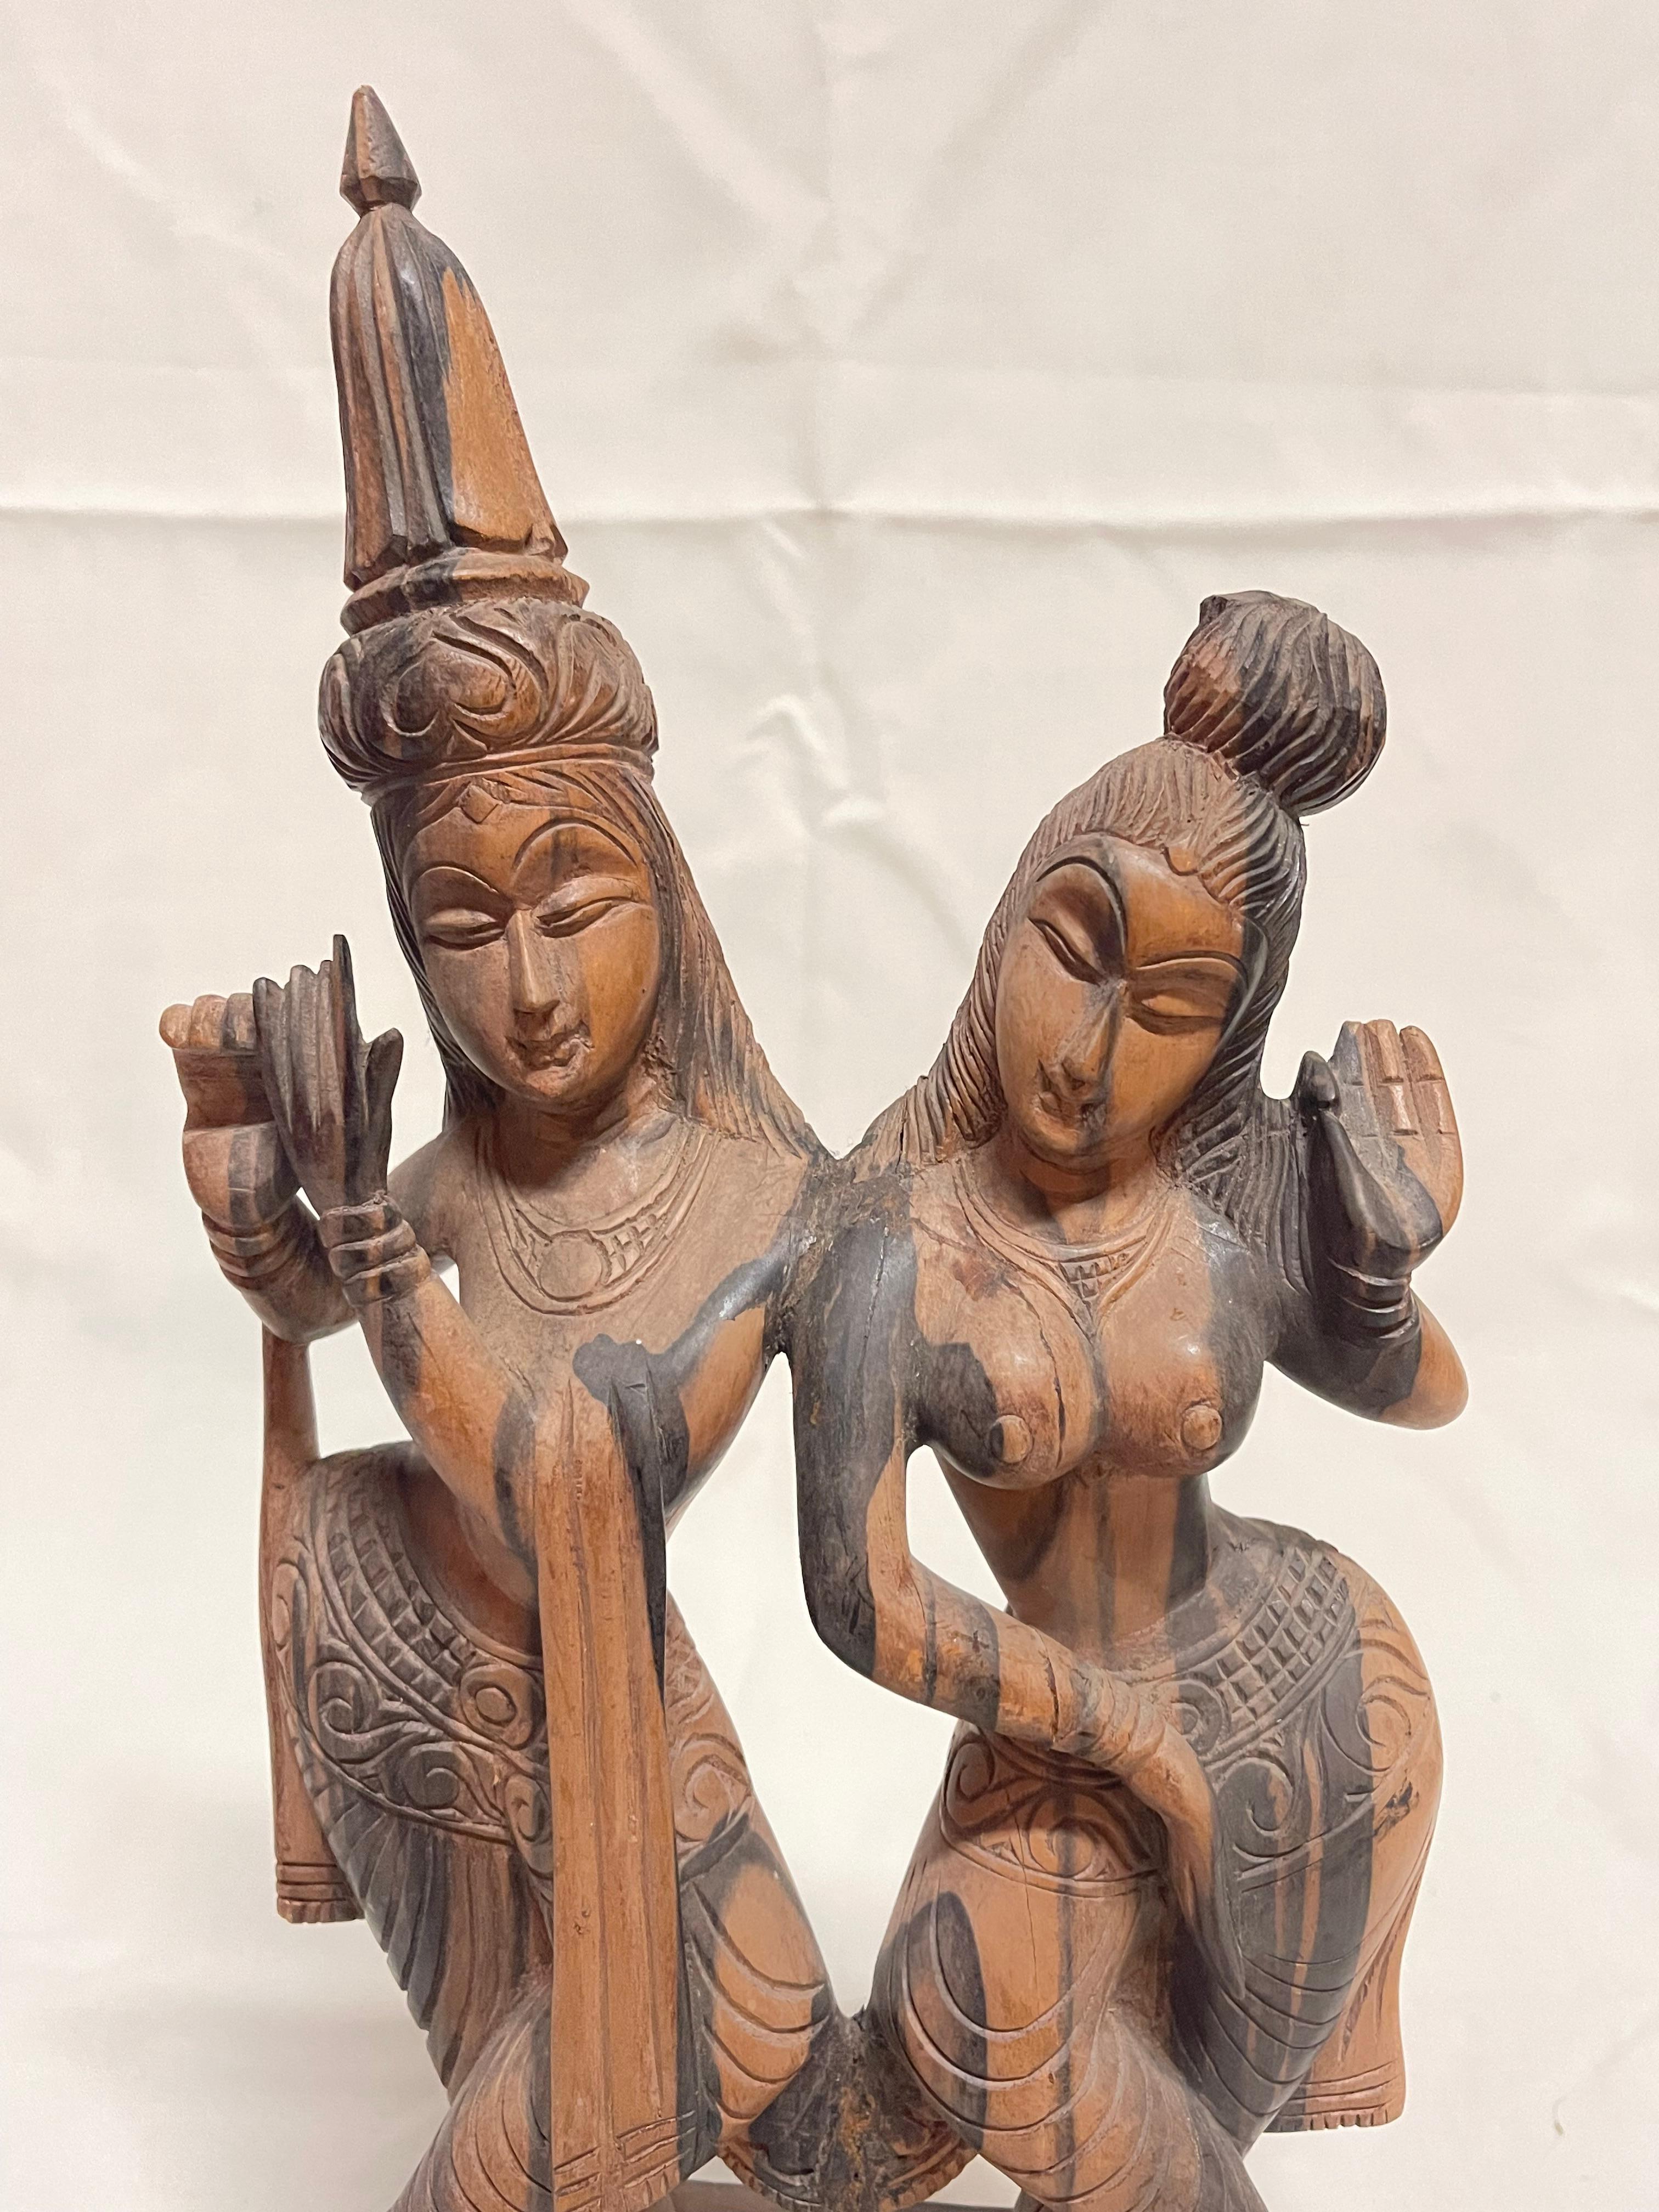 Hermosa talla hindú en madera - Colección Privada Domenico Rugiano